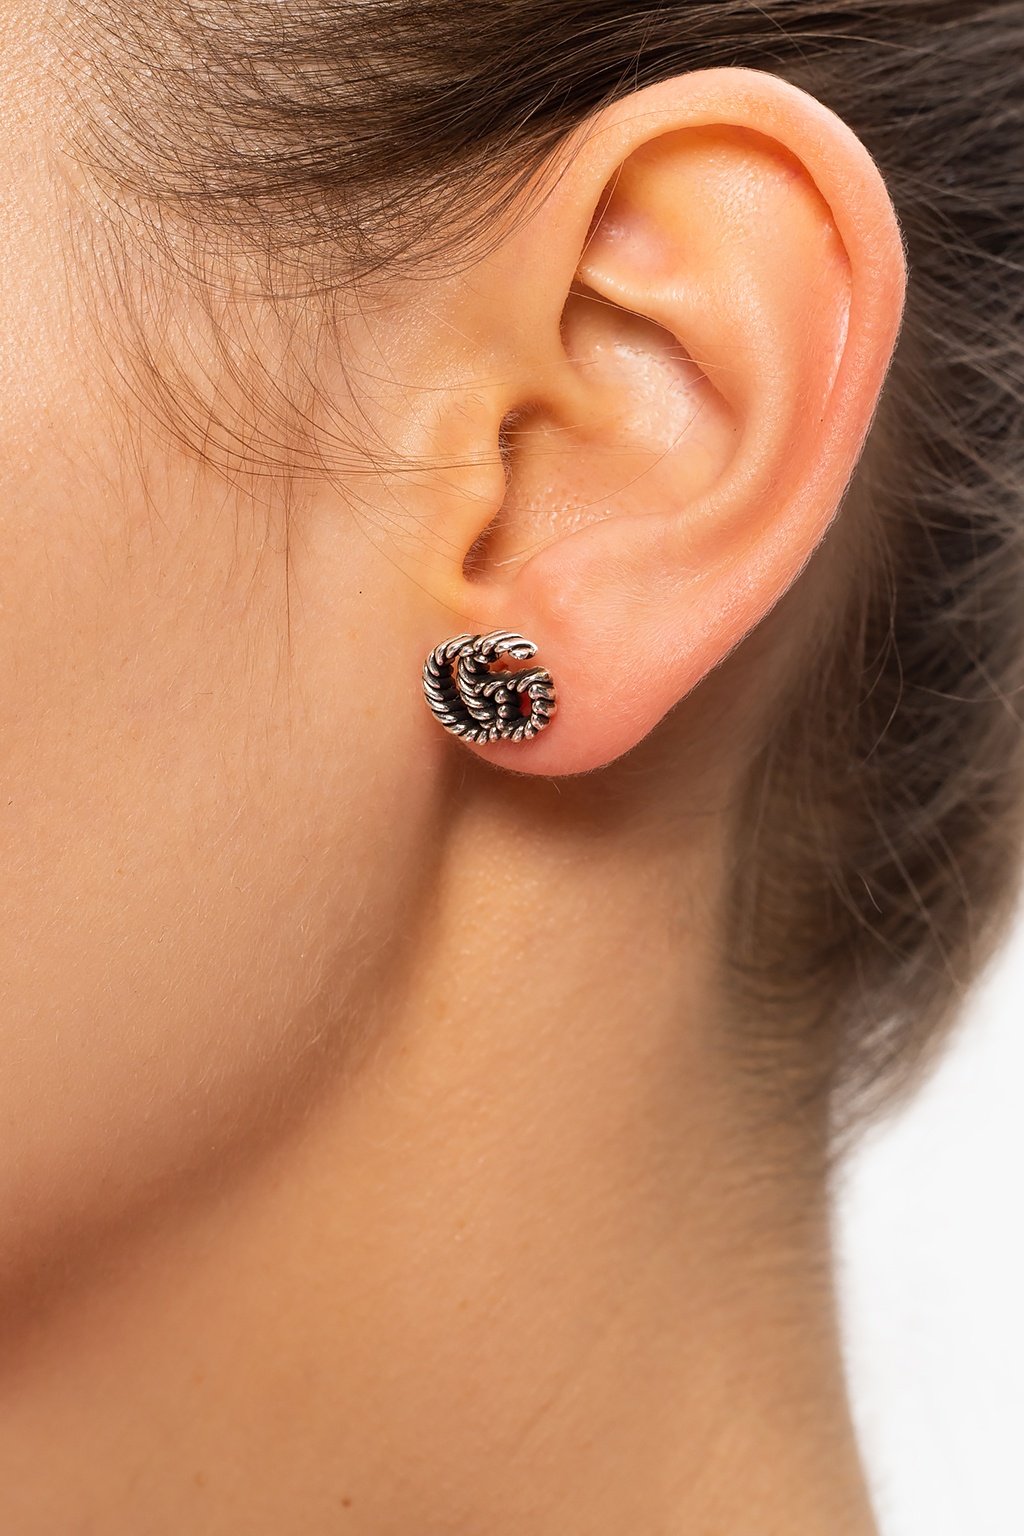 gucci earrings on ear